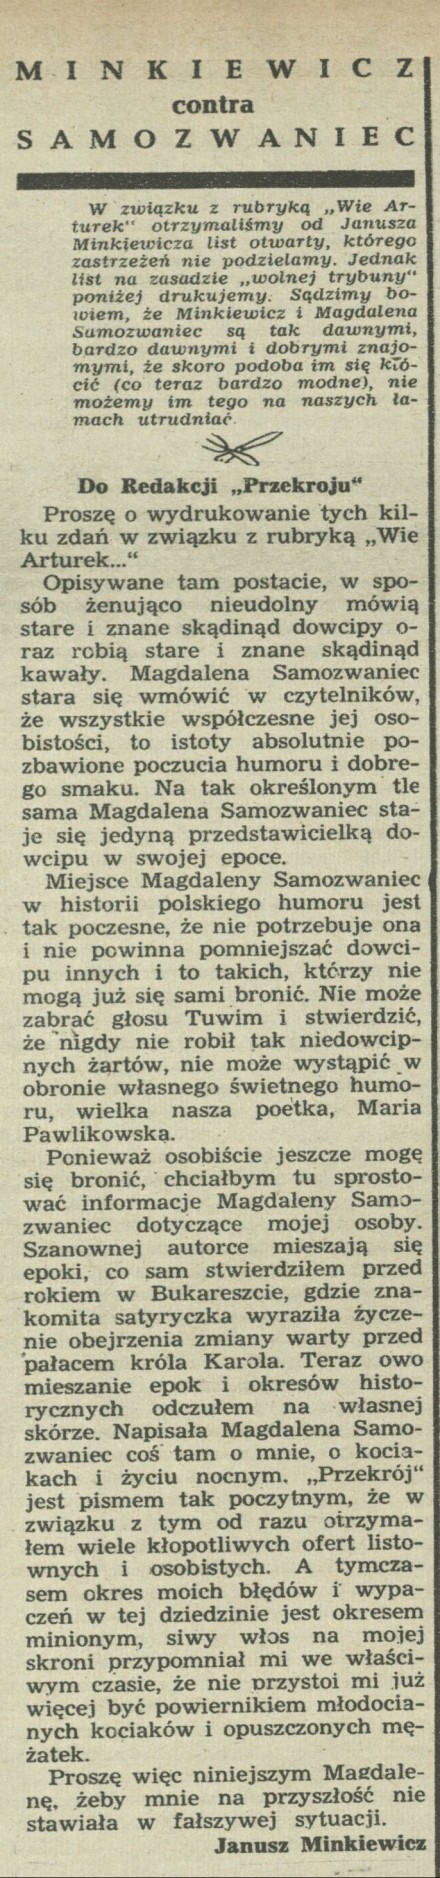 Minkiewicz kontra Samozwaniec